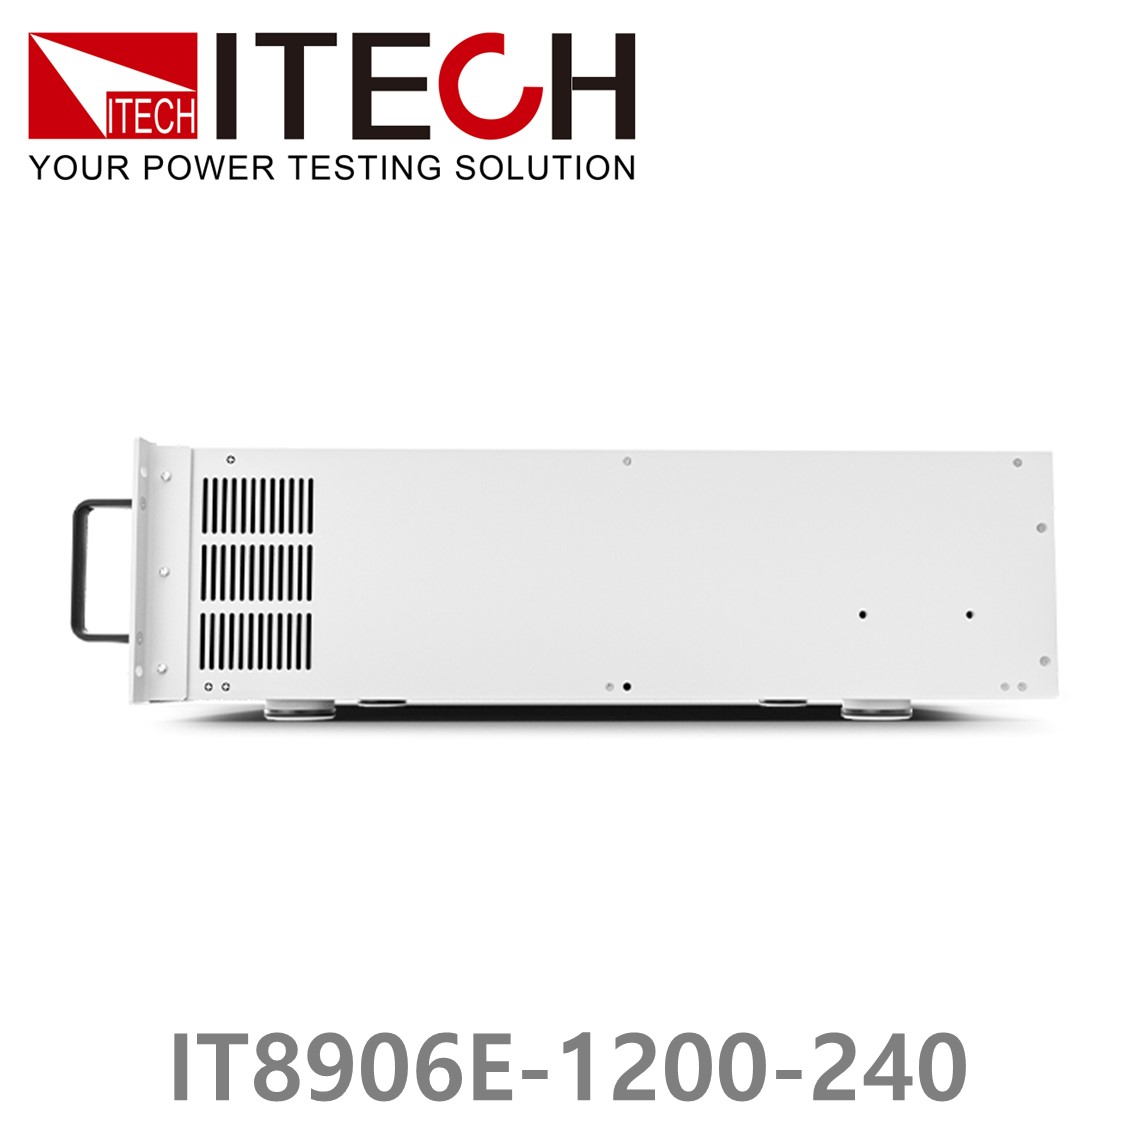 [ ITECH ] IT8906E-1200-240  고성능 고전력 DC 전자로드 1200V/240A/6kW (4U)